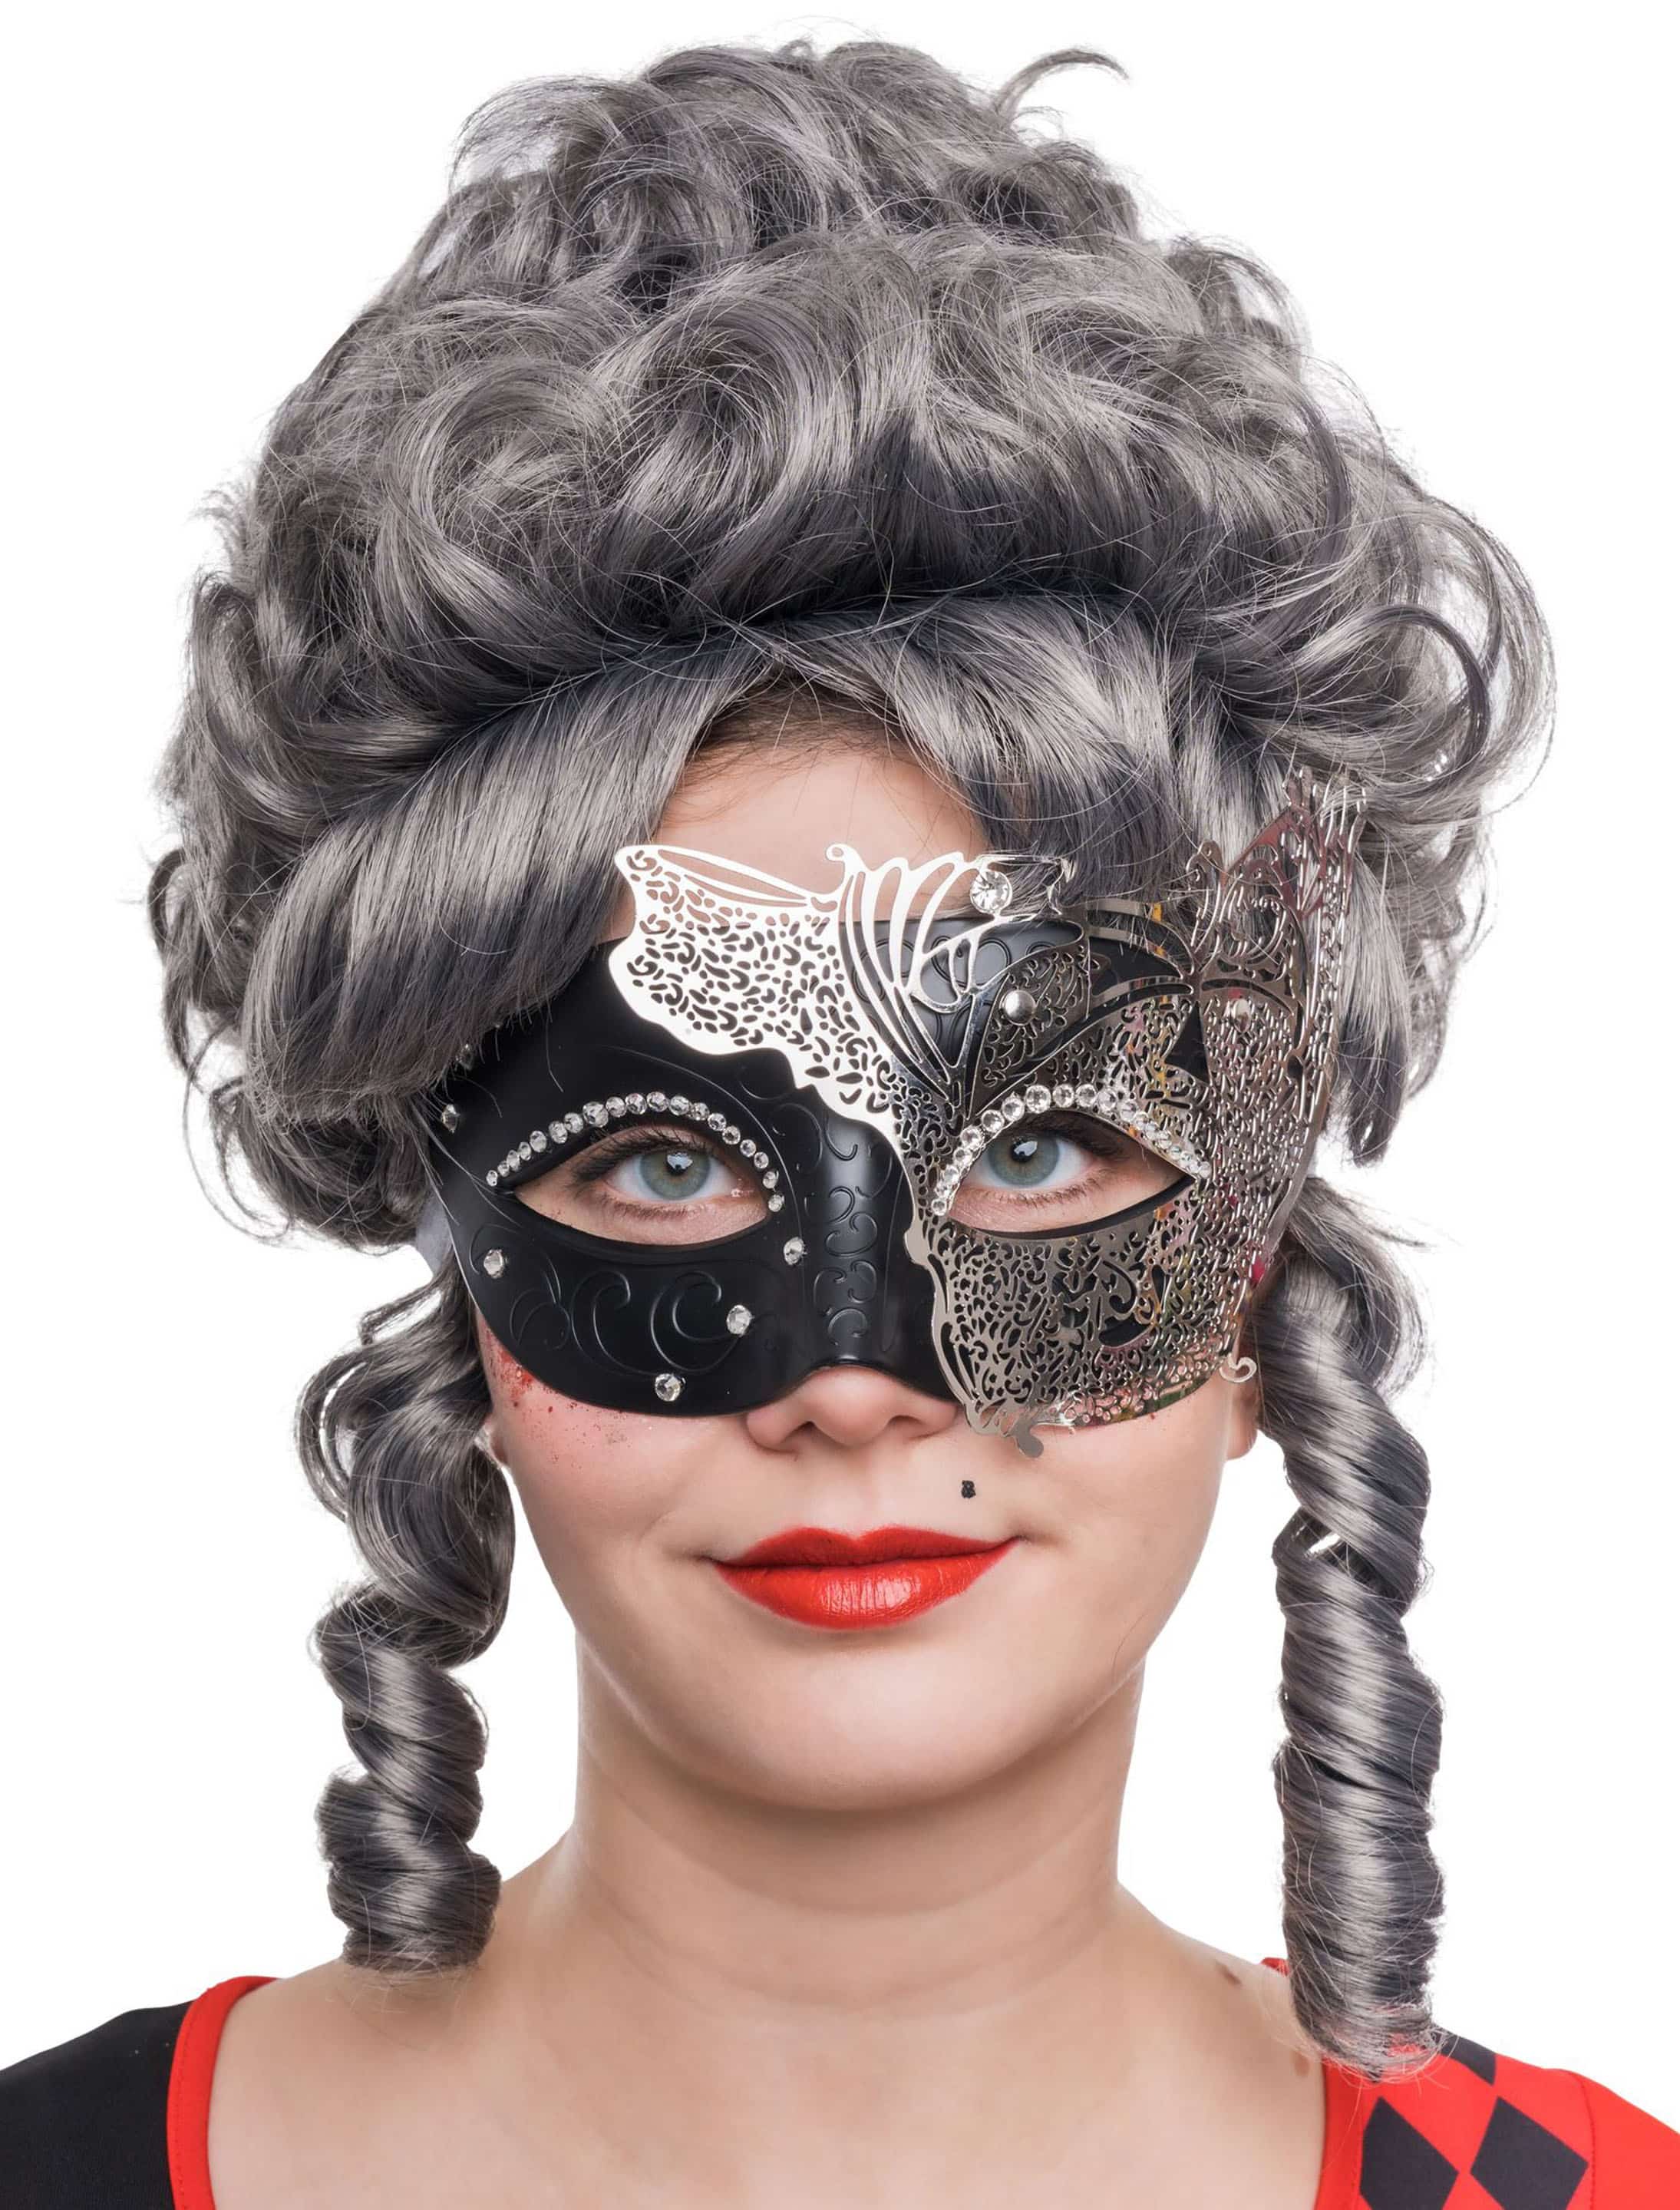 Augenmaske aus Metall zweifarbig schwarz/silber